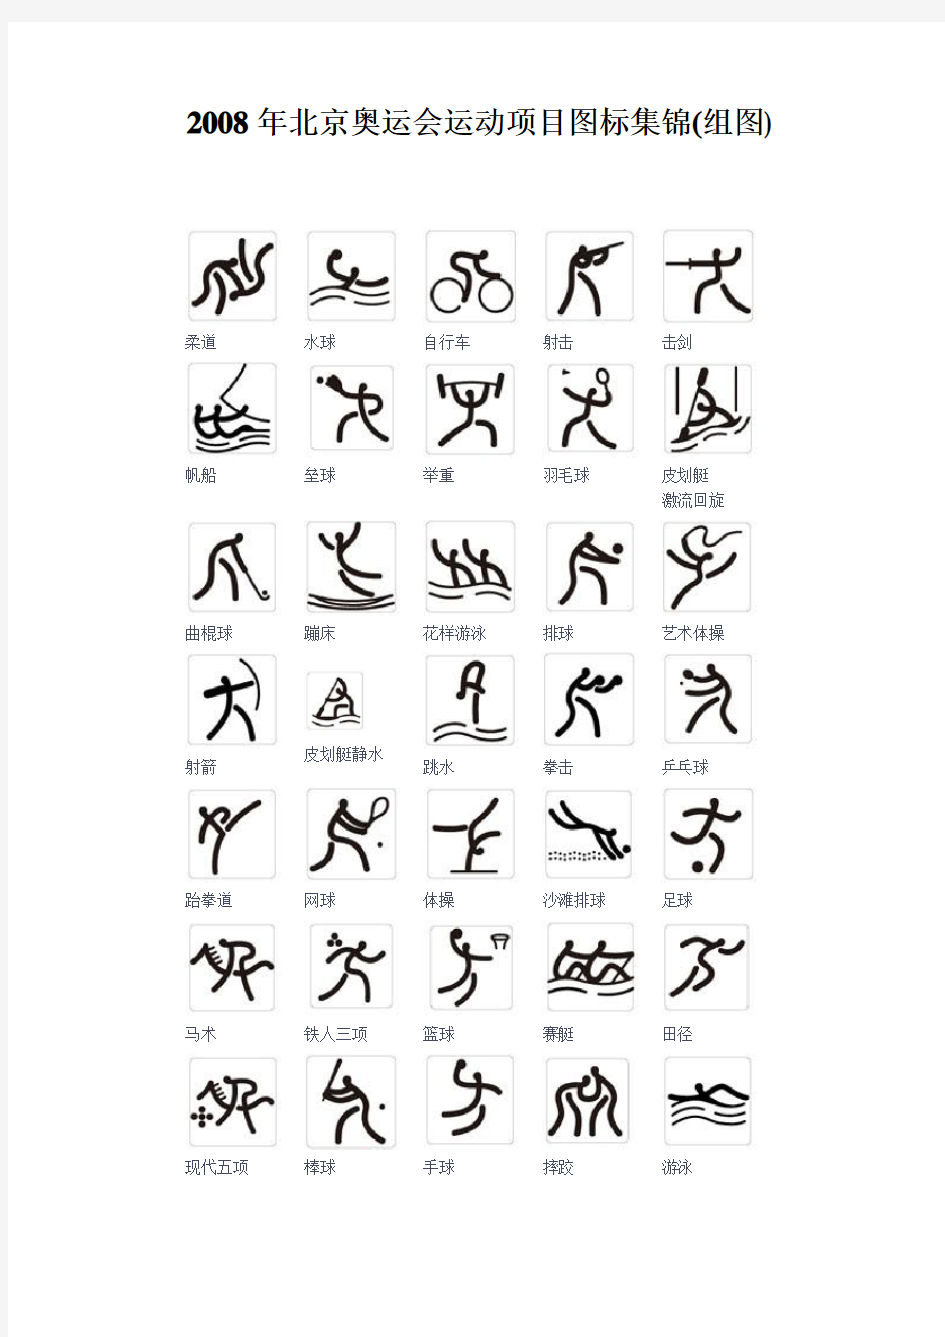 2008年北京奥运会运动项目图标集锦